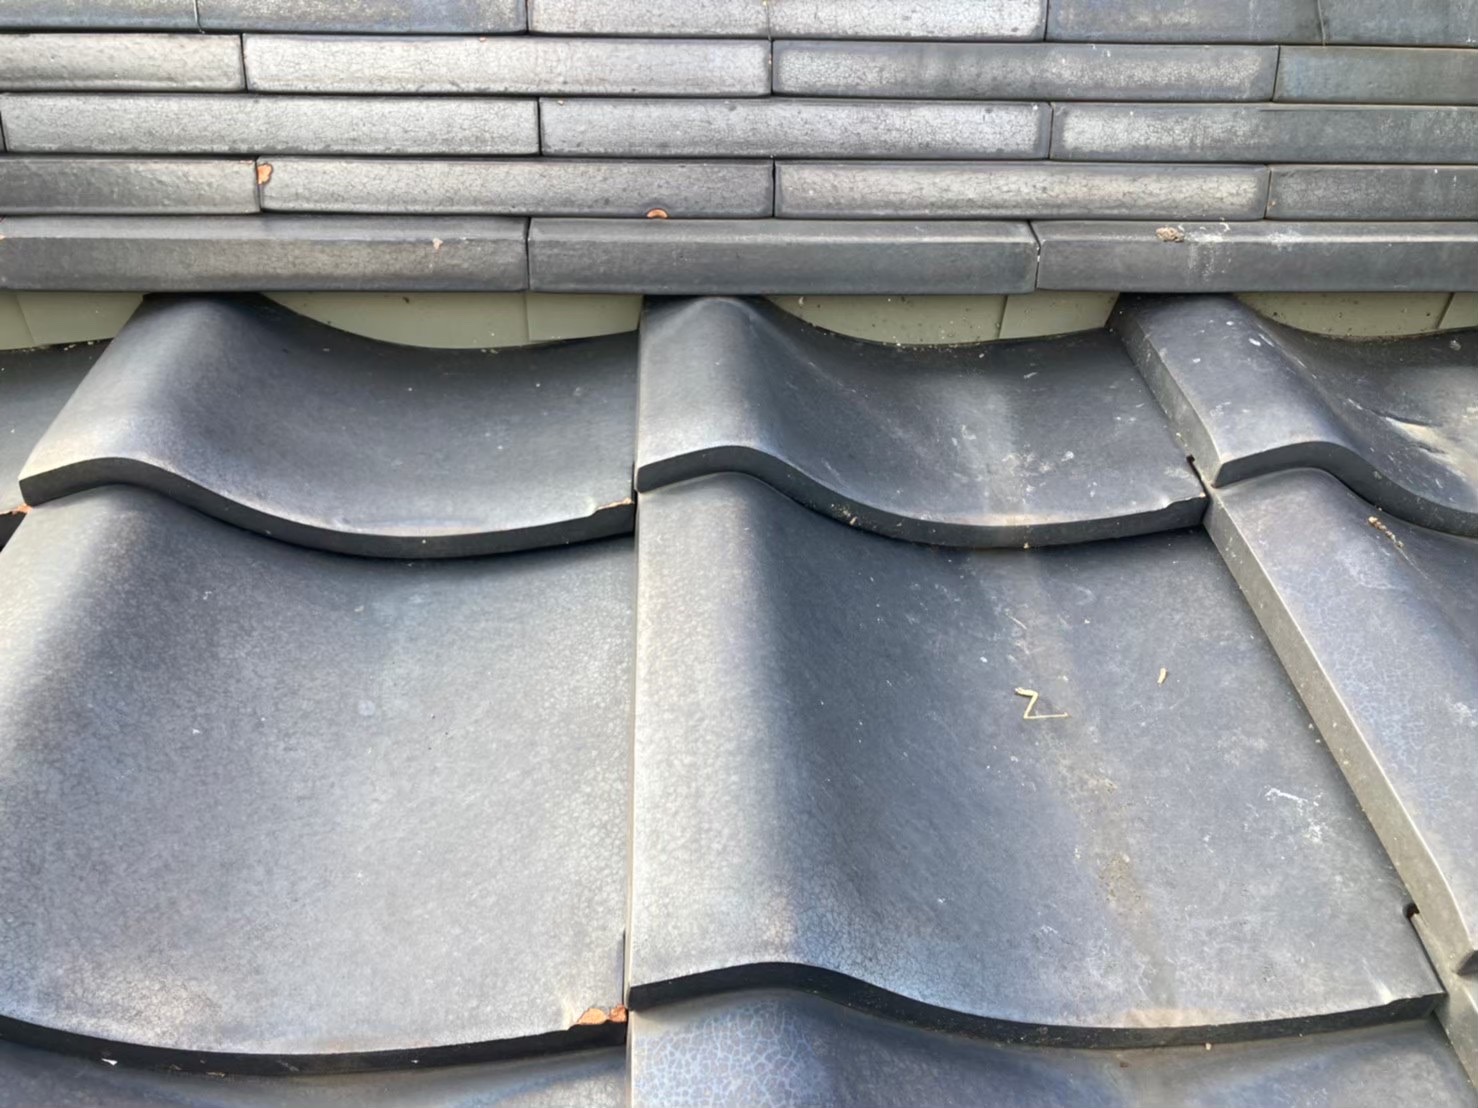 さいたま市大宮区にて屋根修理〈漆喰のメンテナンス工事〉の施工前写真